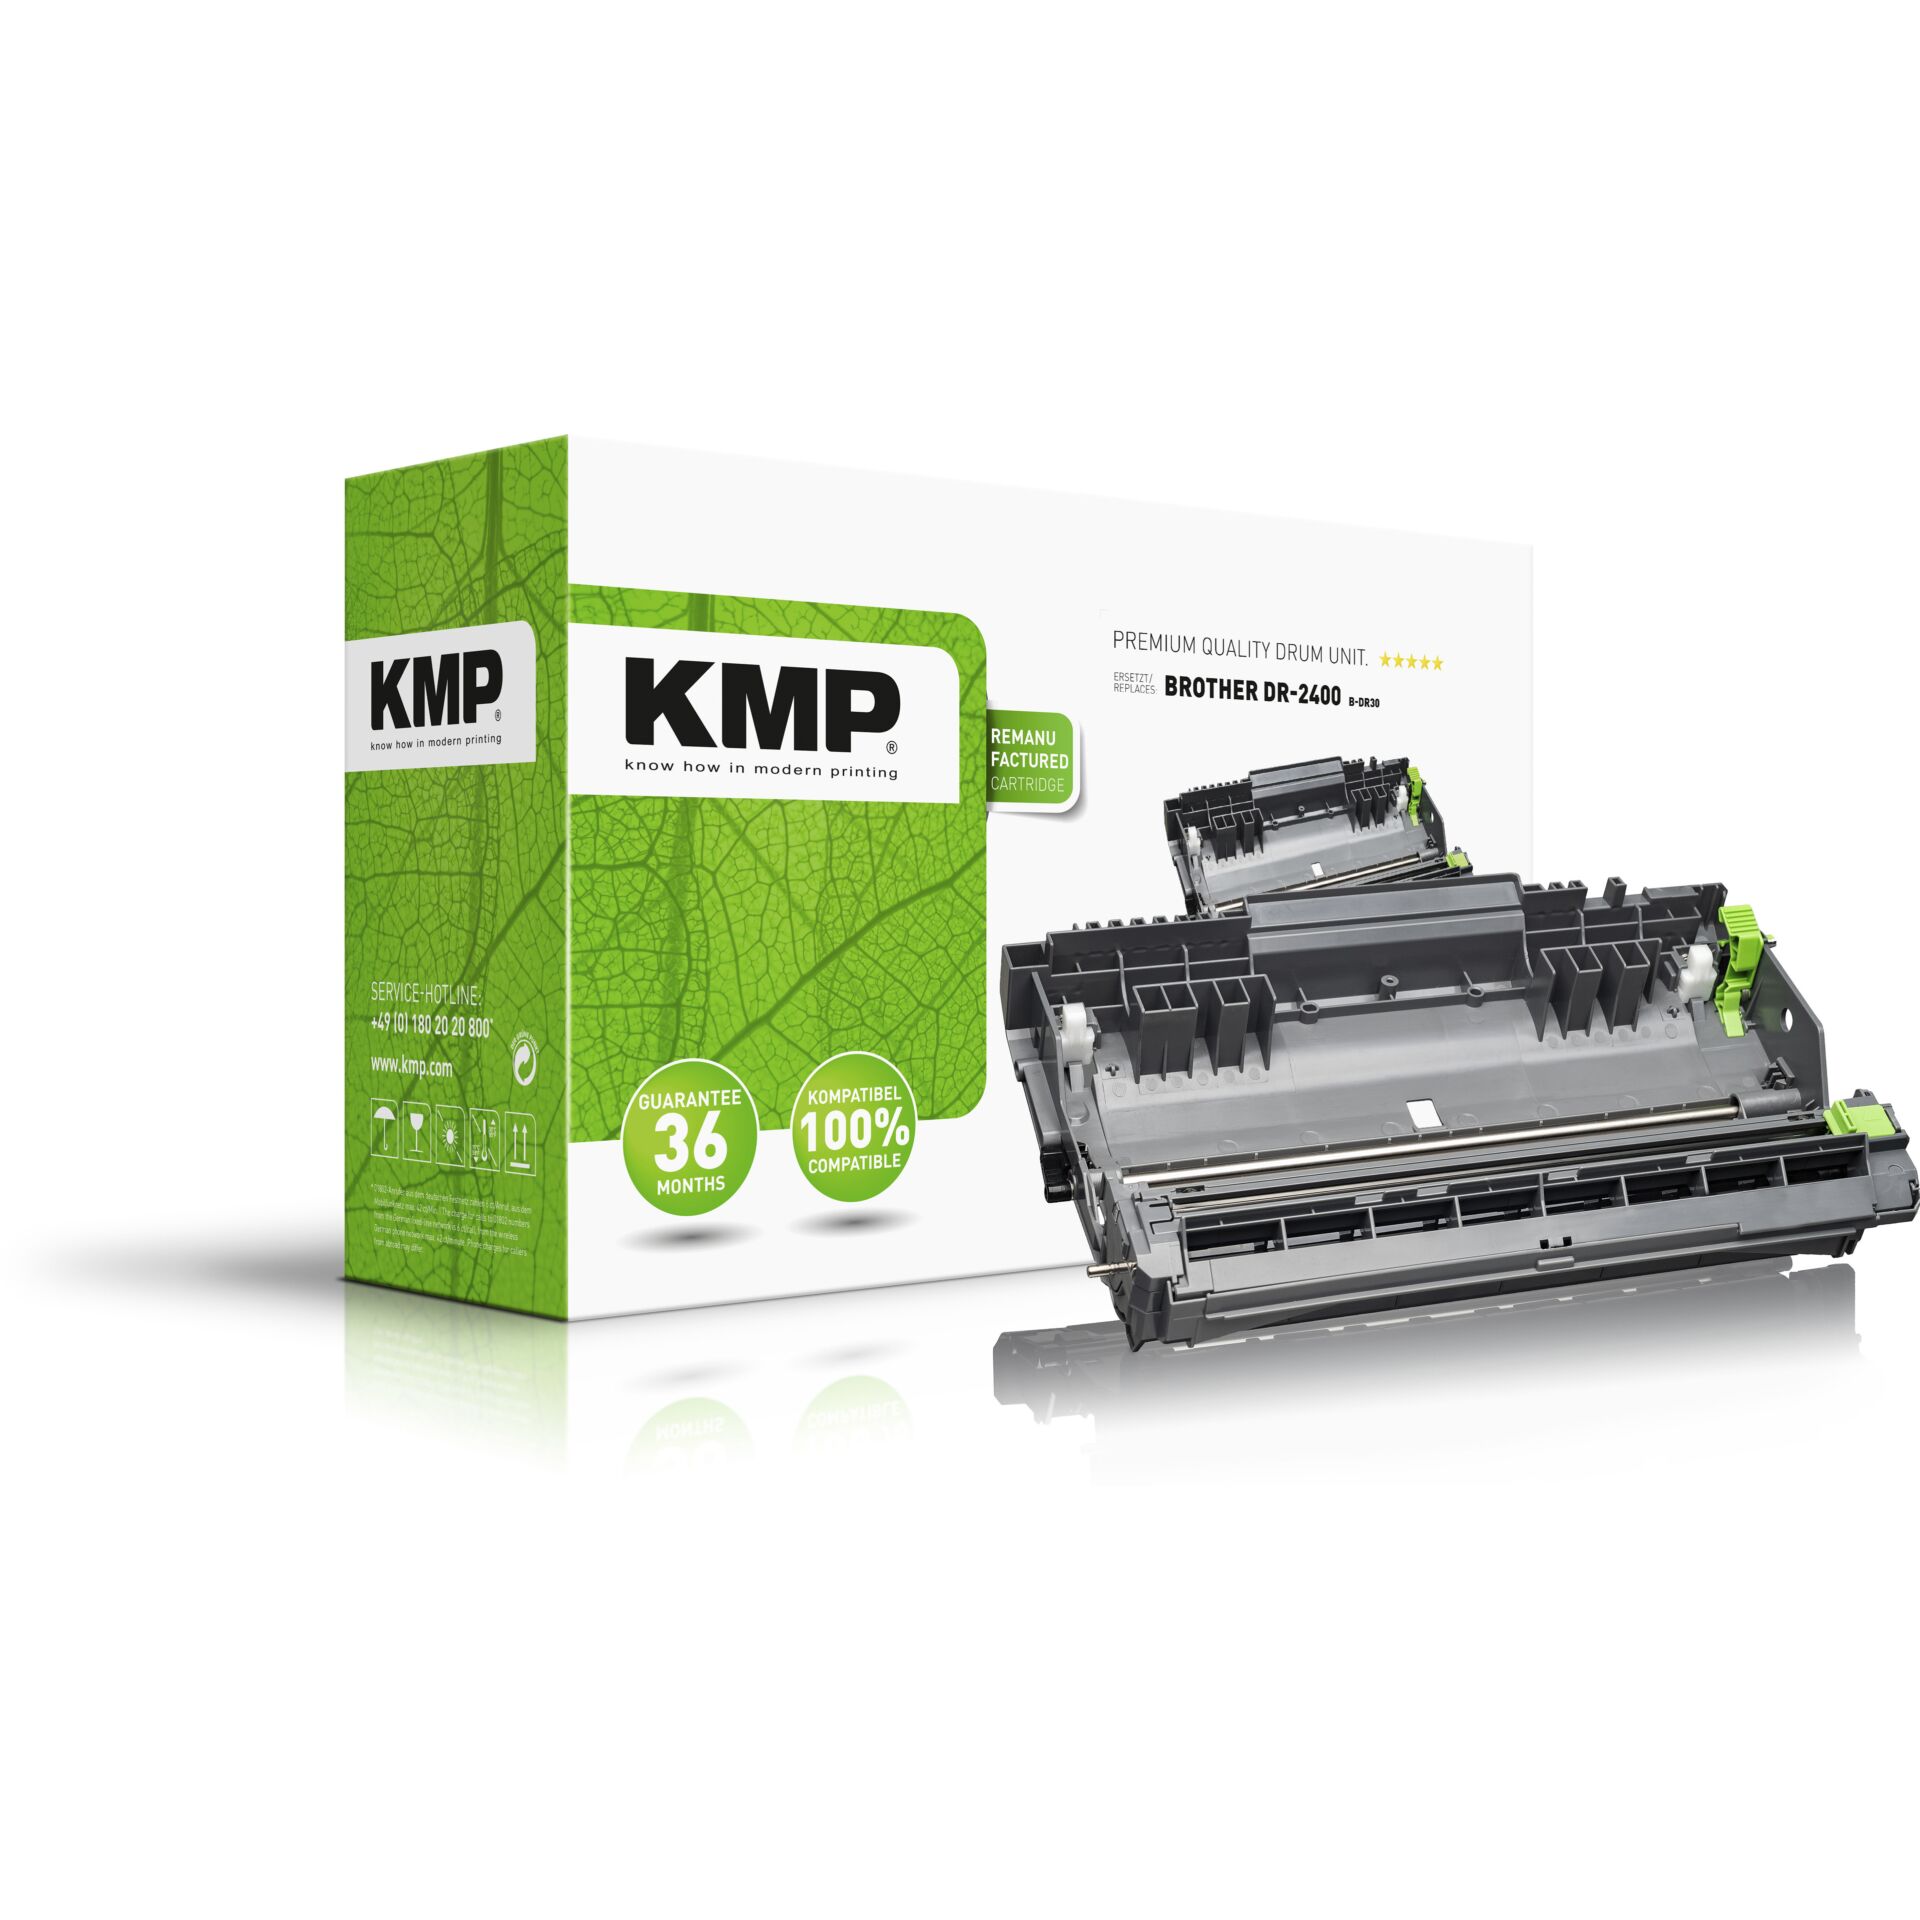 KMP Trommel Brother DR-2400/DR2400 12000 S. B-DR30 remanufactured